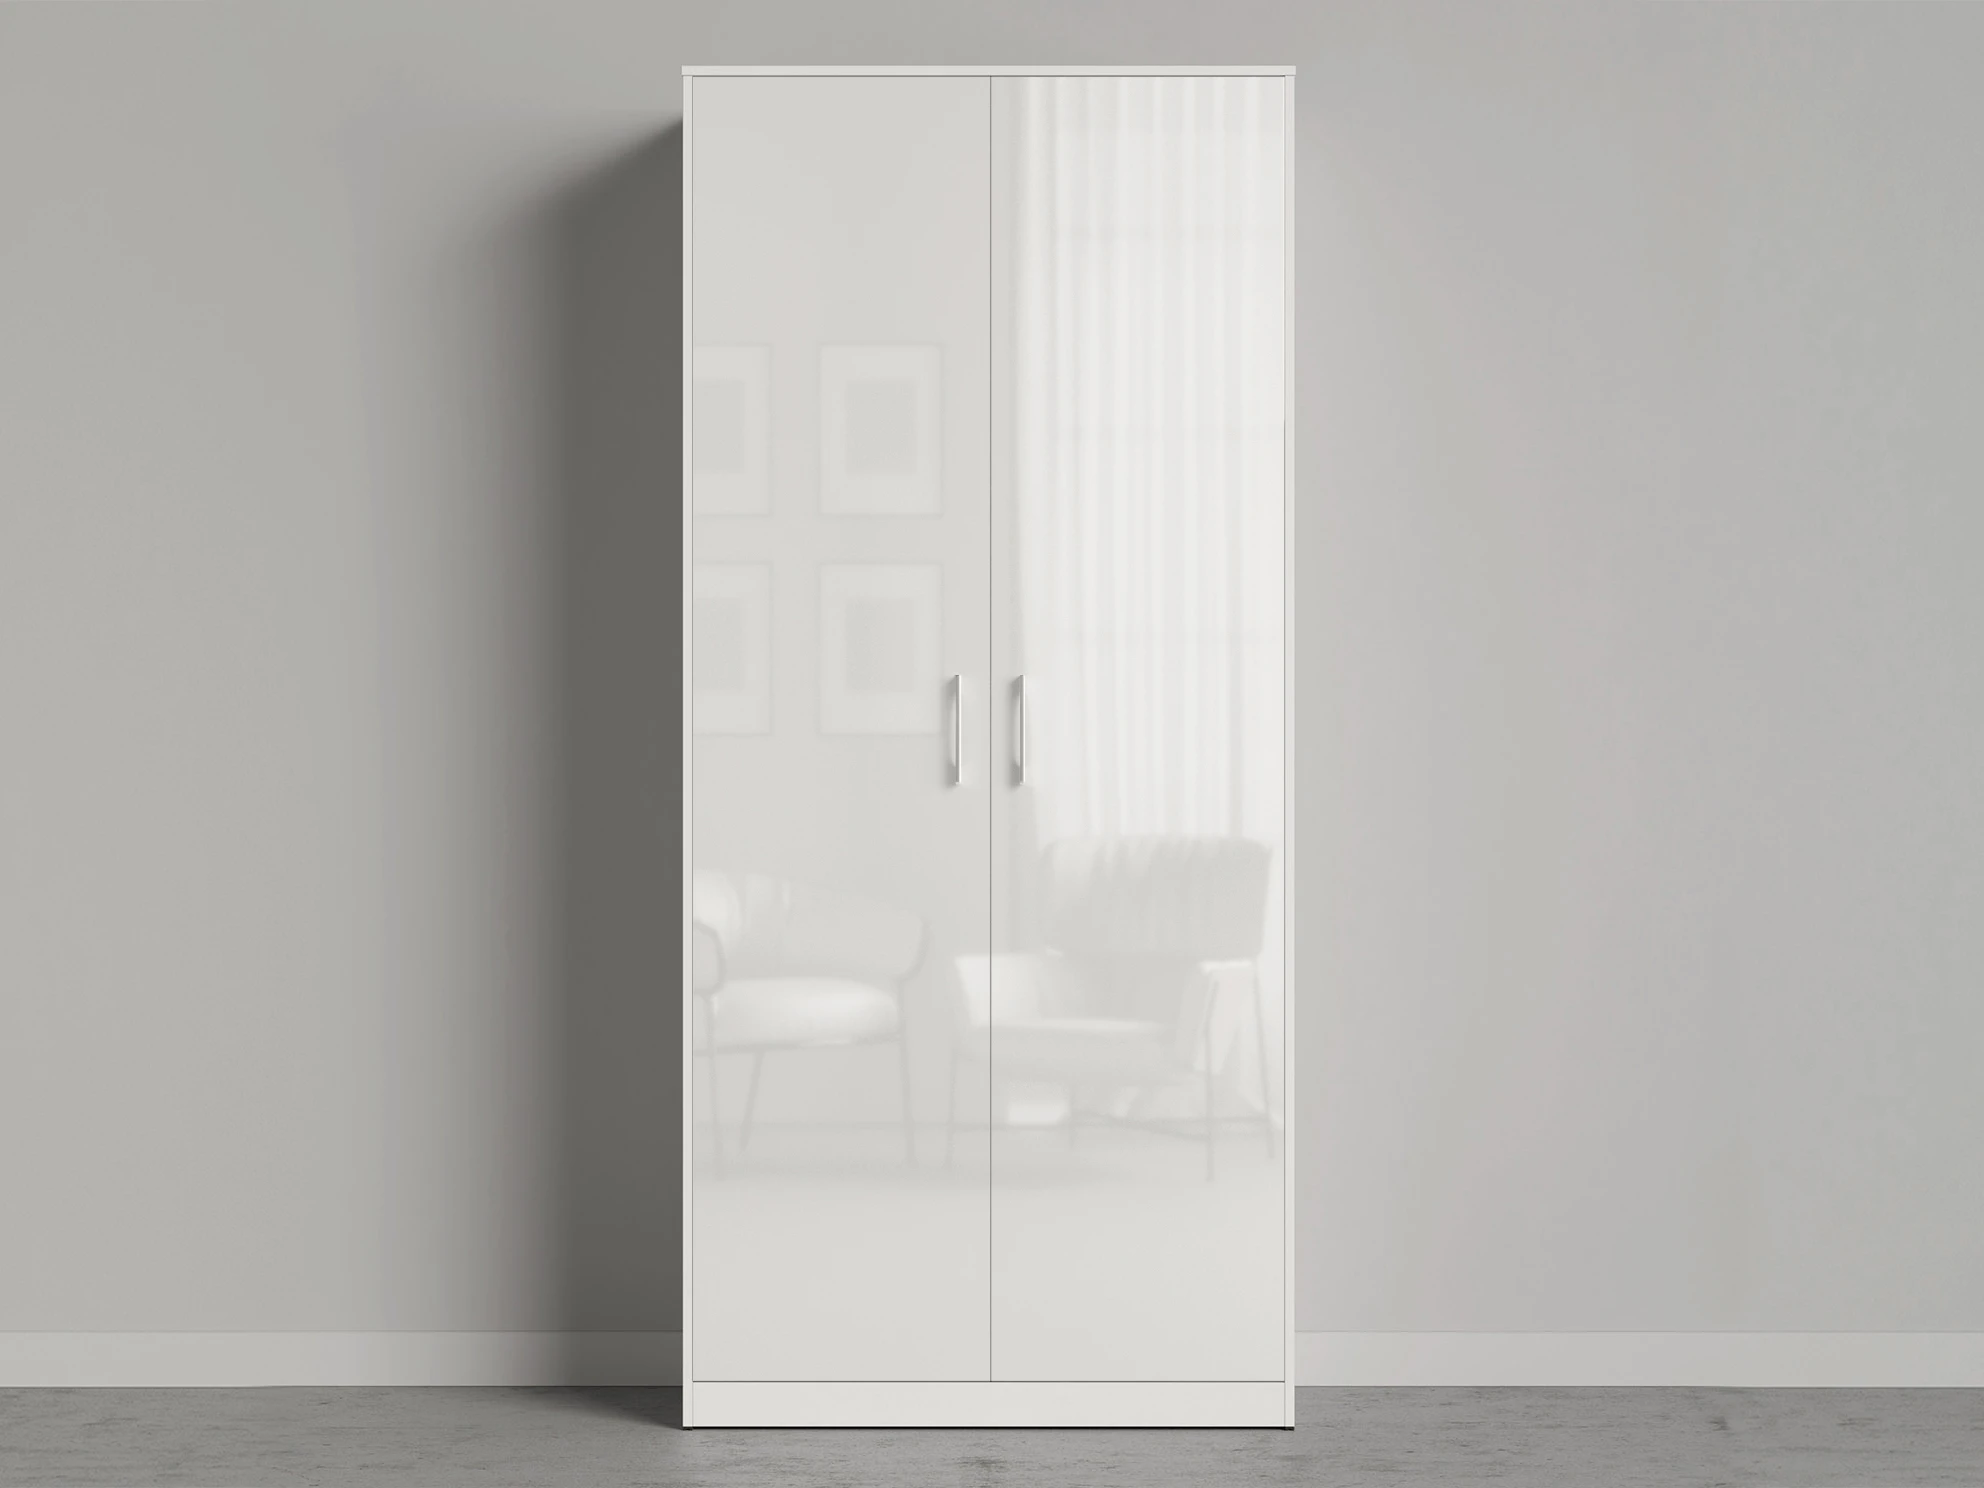 1 Closet 100x200 cm (Standard 45 cm depth) White / White Gloss